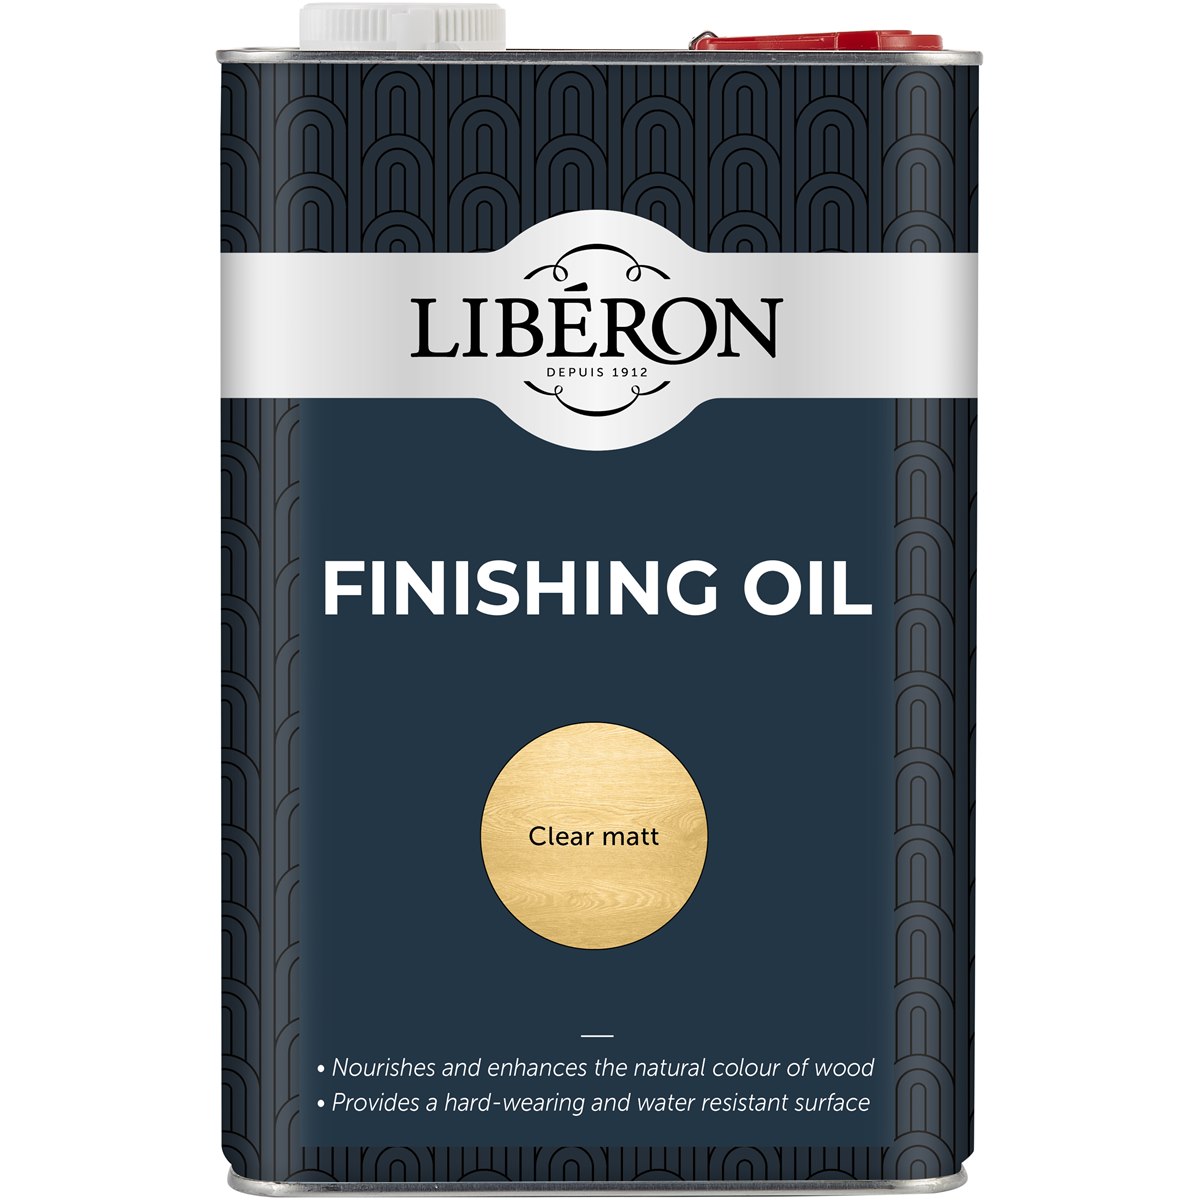 Liberon Finishing Oil 5 Litre